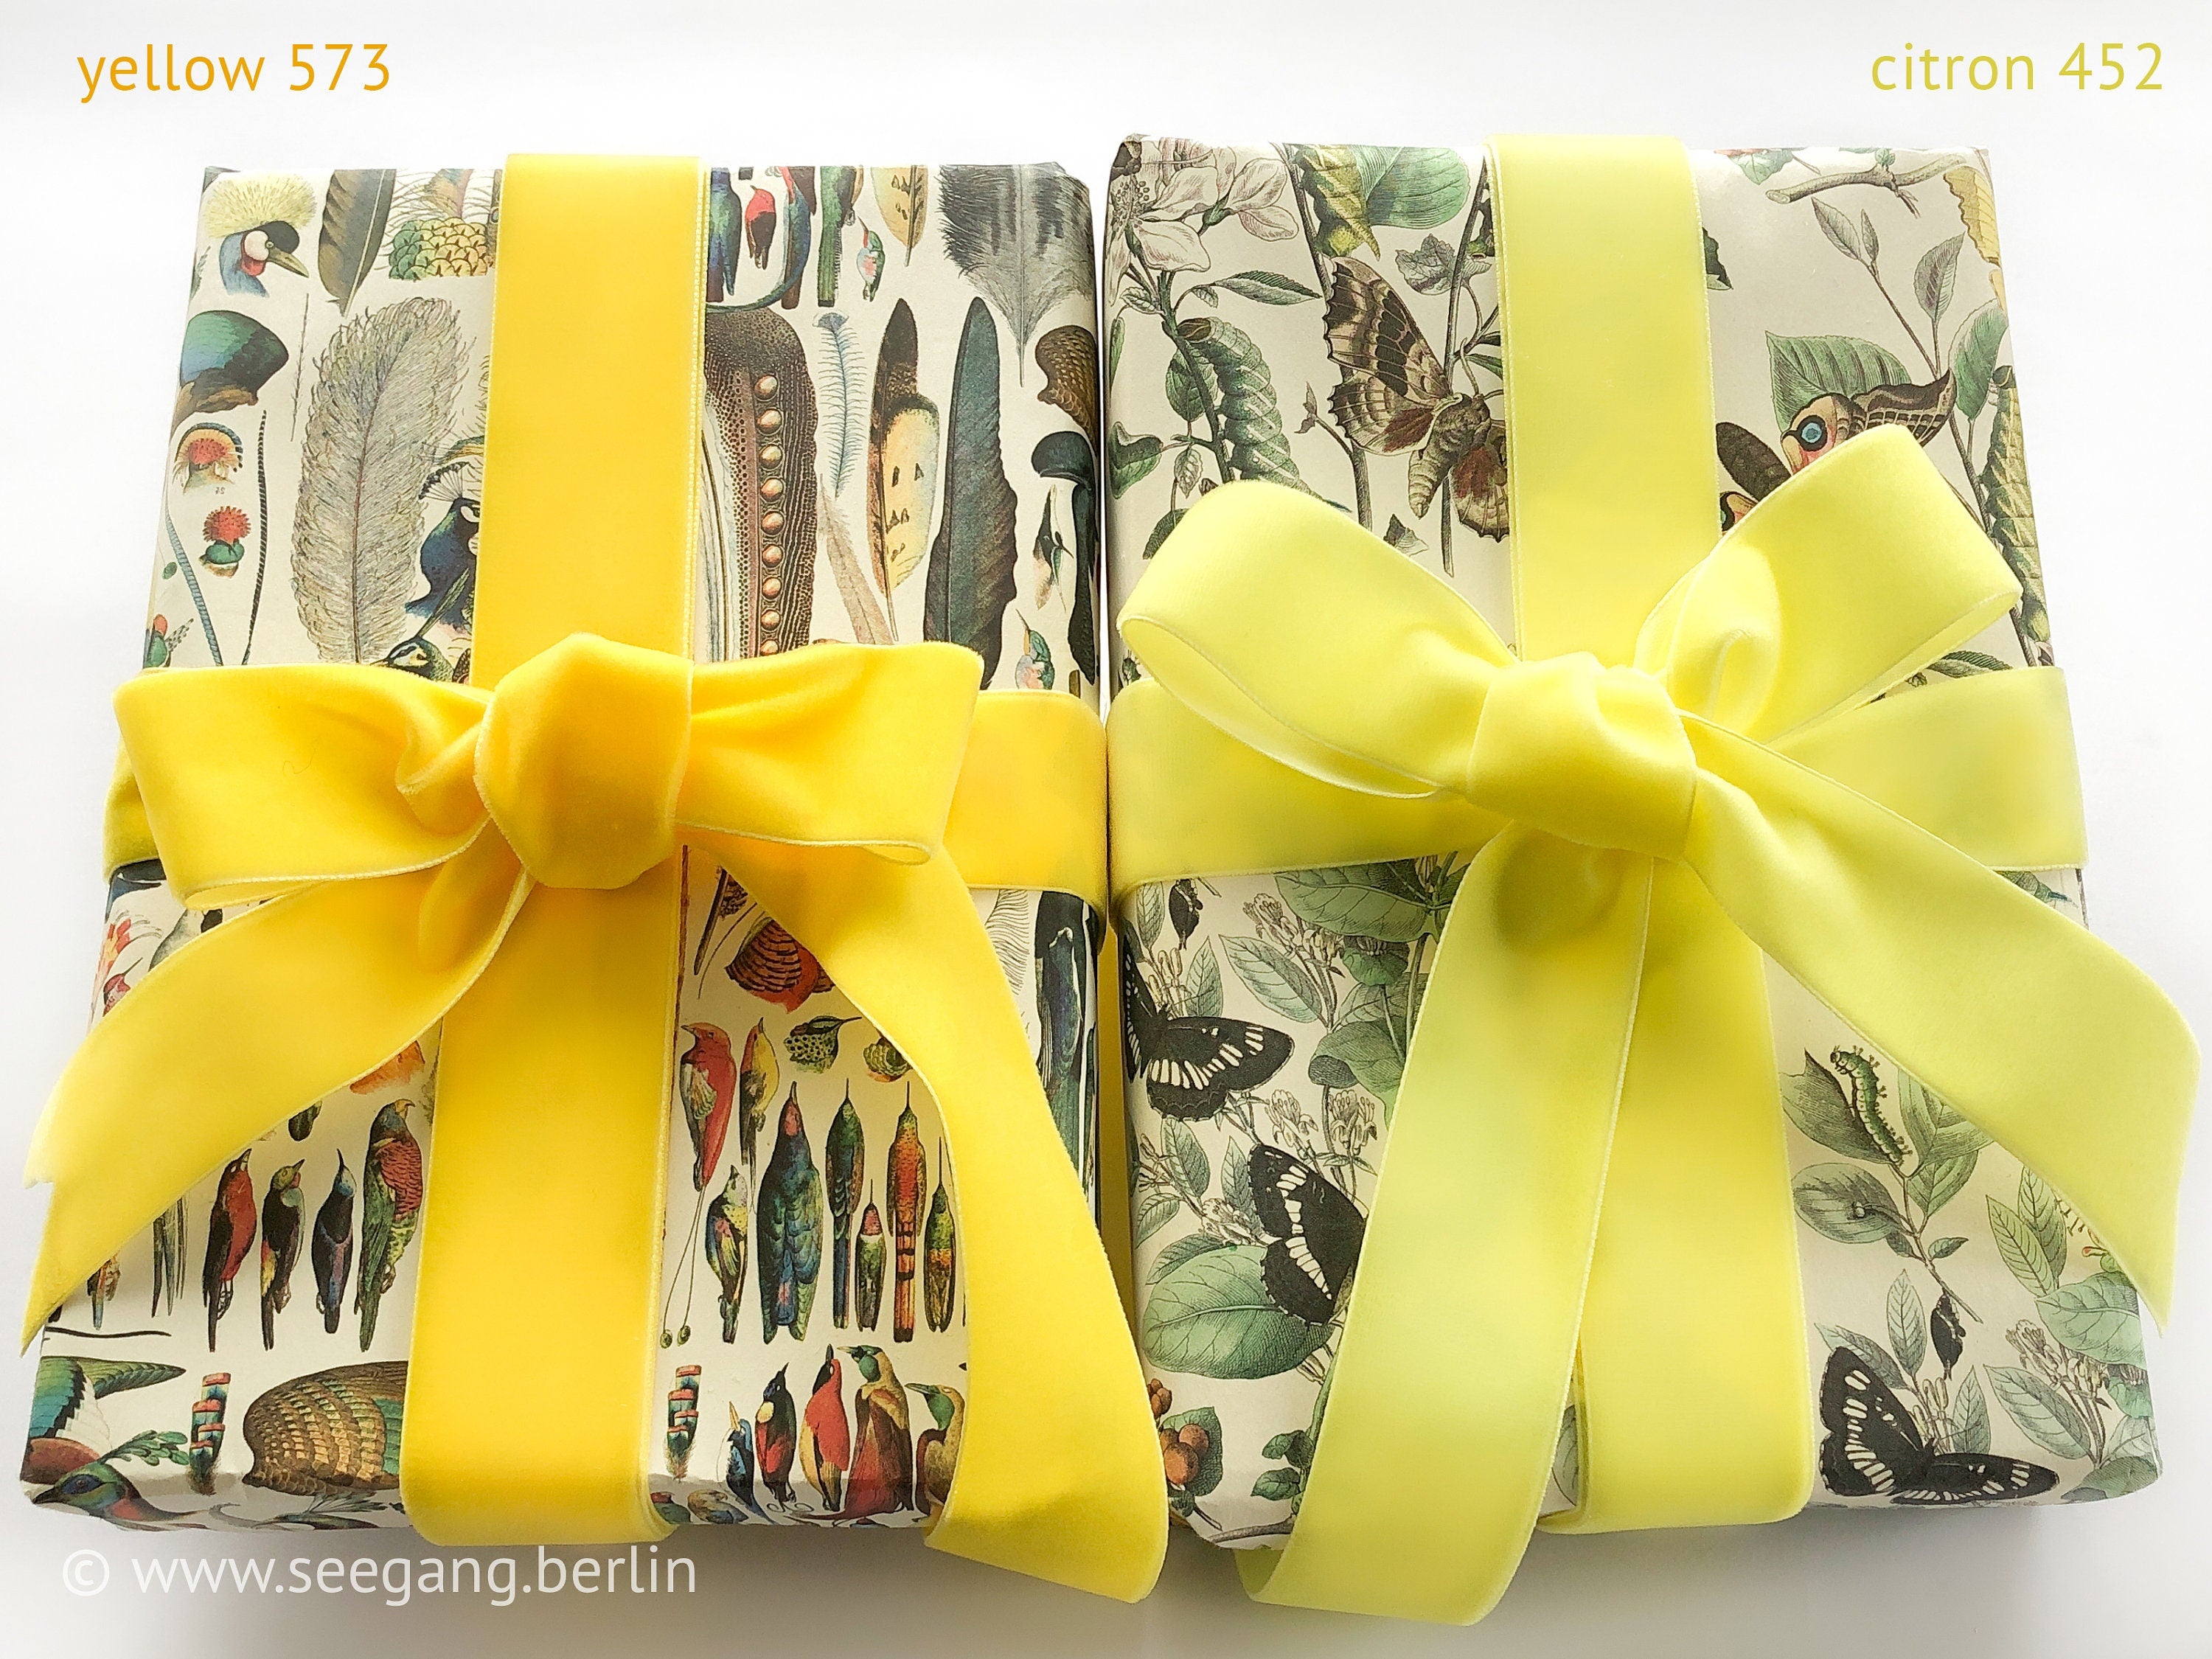 Samtgürtel mit Schleife in Gelb, Gold, Maisgelb. 72 Farben, 3 Breiten. Schweizer Qualität für Kleid, Brautkleid, Ballkleid, Dirndl, Abiball.